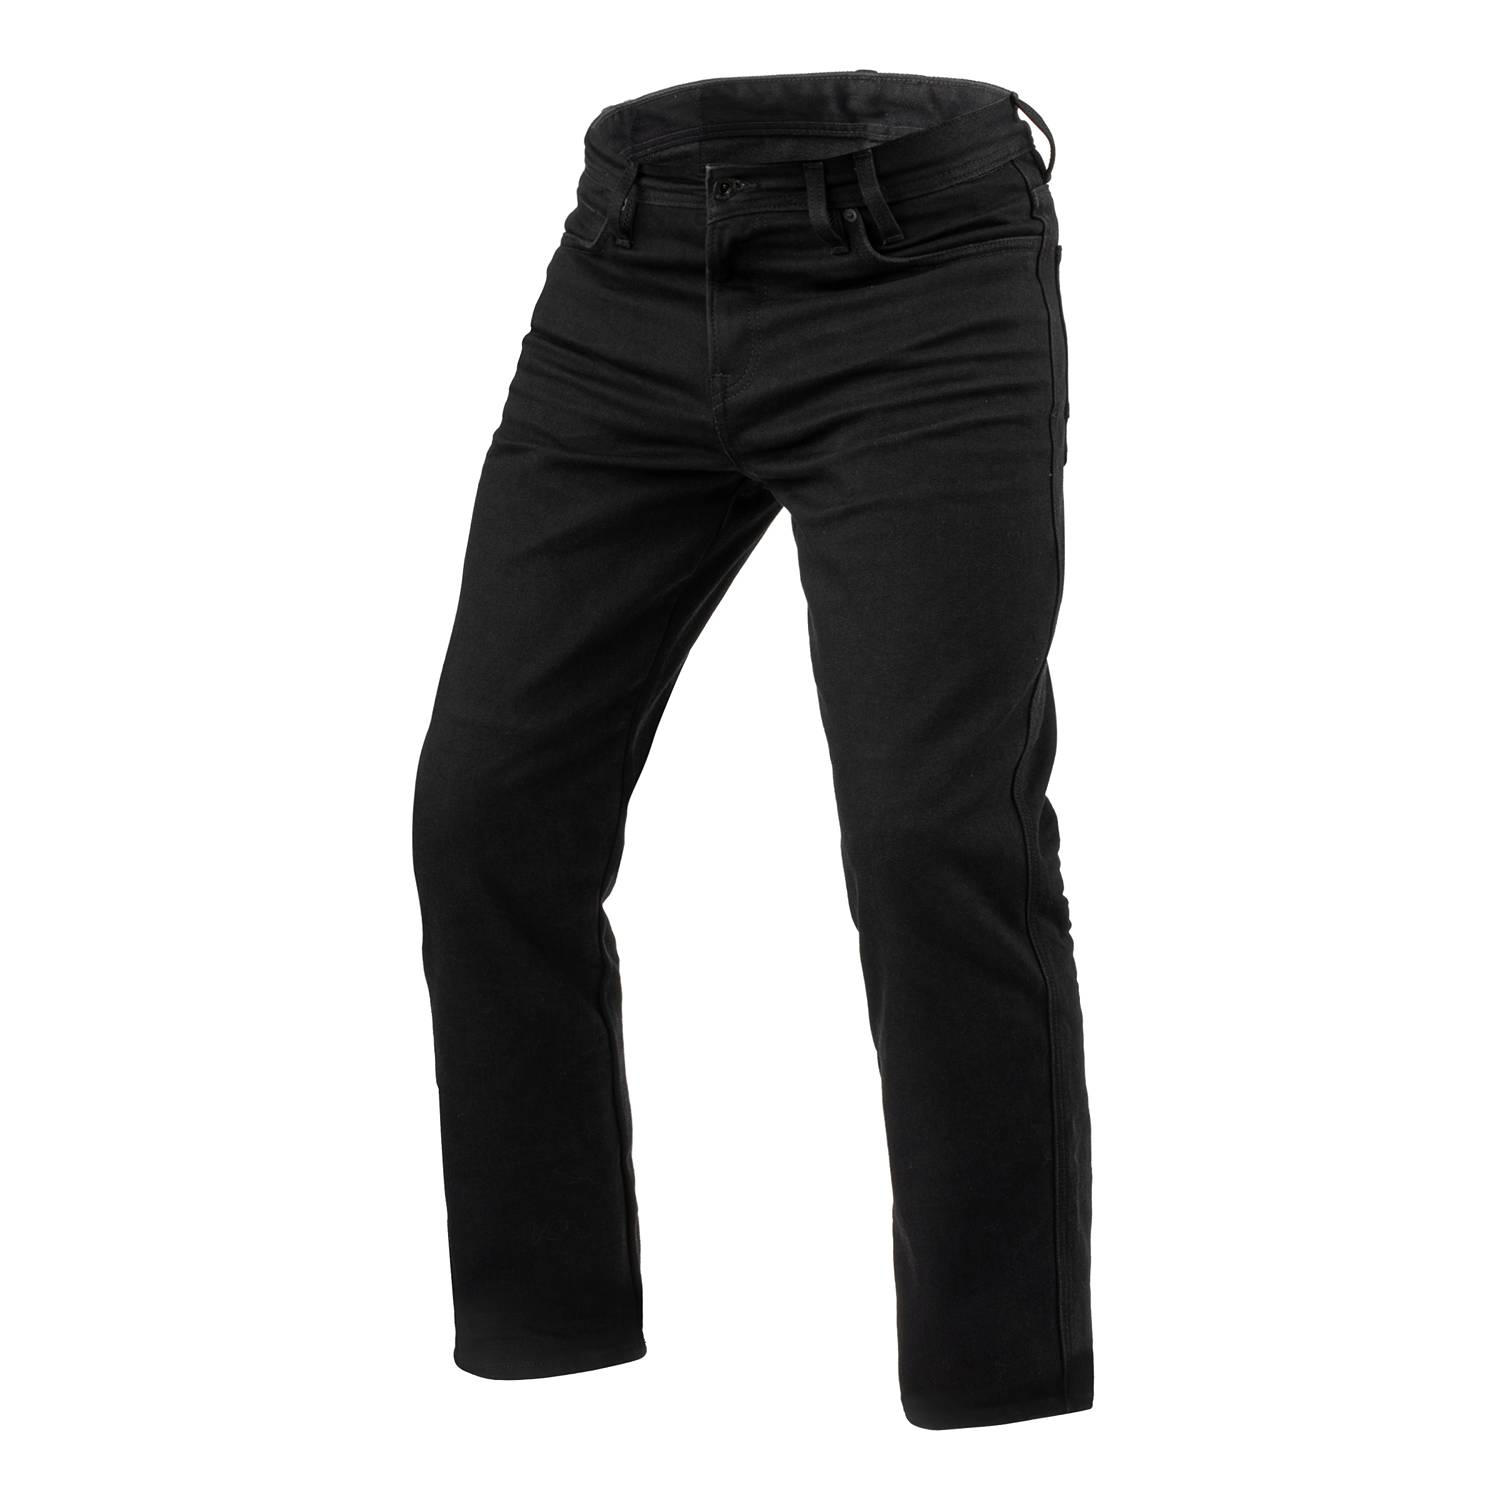 Image of REV'IT! Jeans Lombard 3 RF Black L34 Motorcycle Jeans Size L34/W28 EN